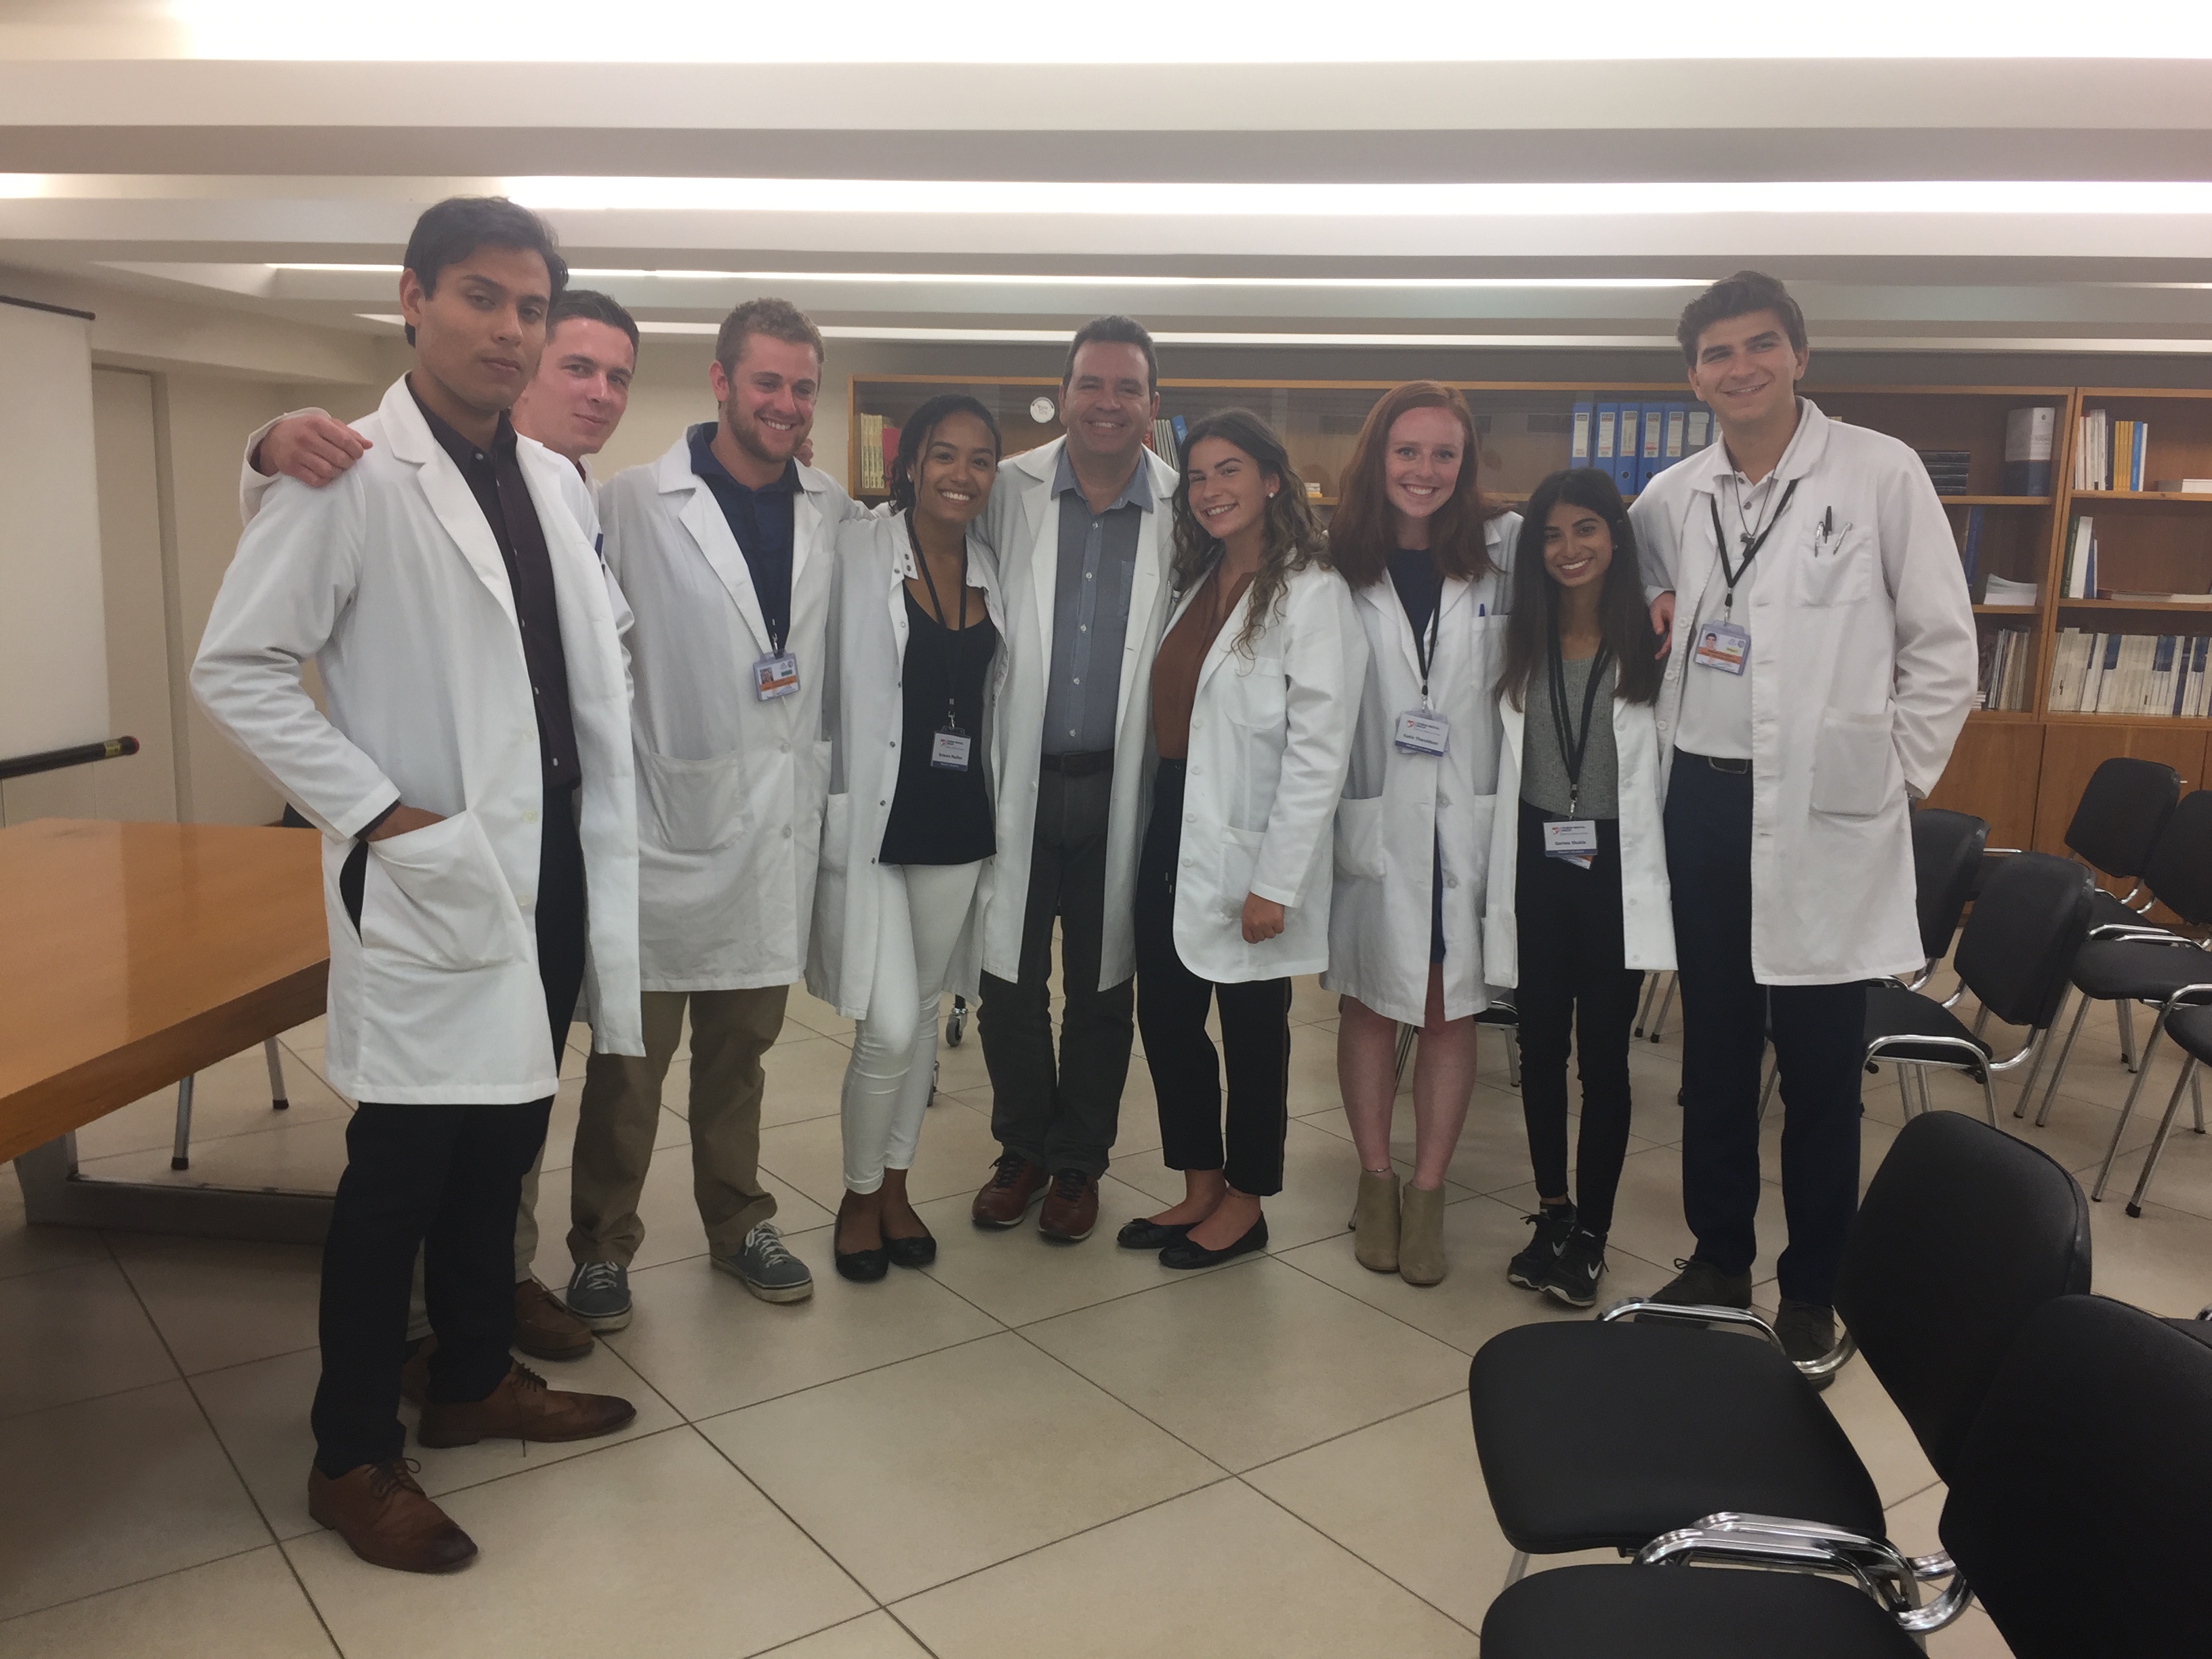 Με Premed φοιτητές από τις Ηνωμένες Πολιτείες, στο πλαίσιο της συνεργασίας του μαιευτηρίου ΓΑΙΑ με το project Atlantis (Clinical Shadowing), Ιατρικό Αθηνών, 2017